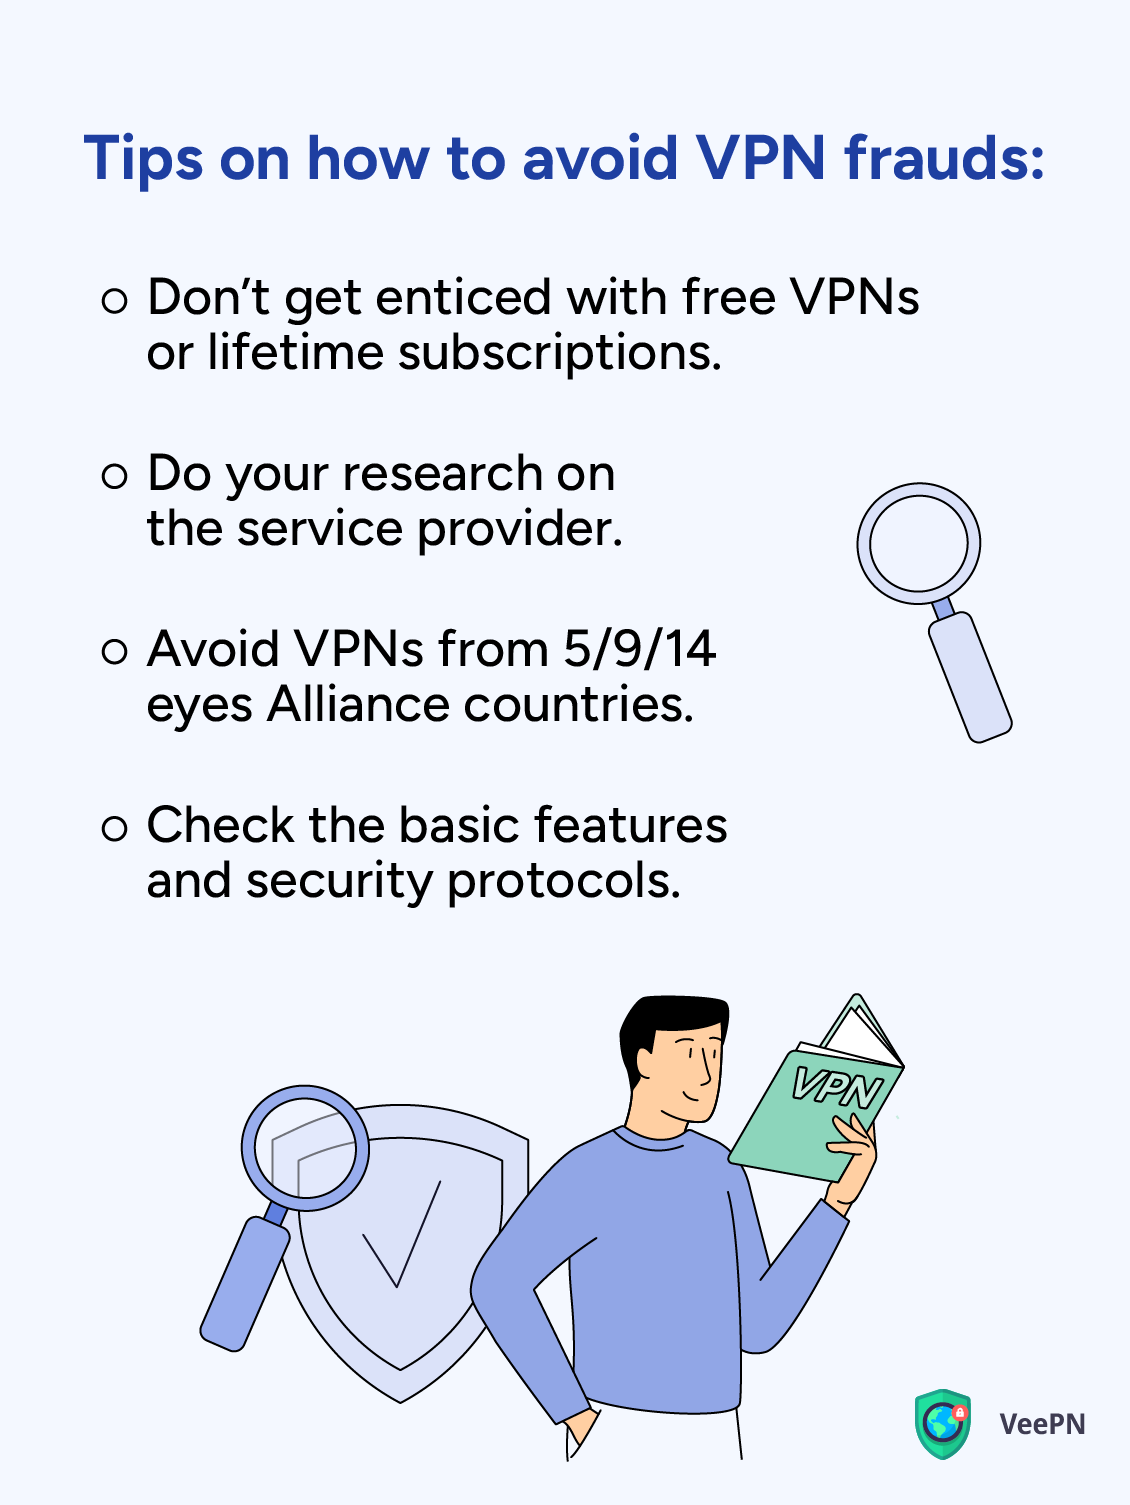 How to avoid VPN frauds